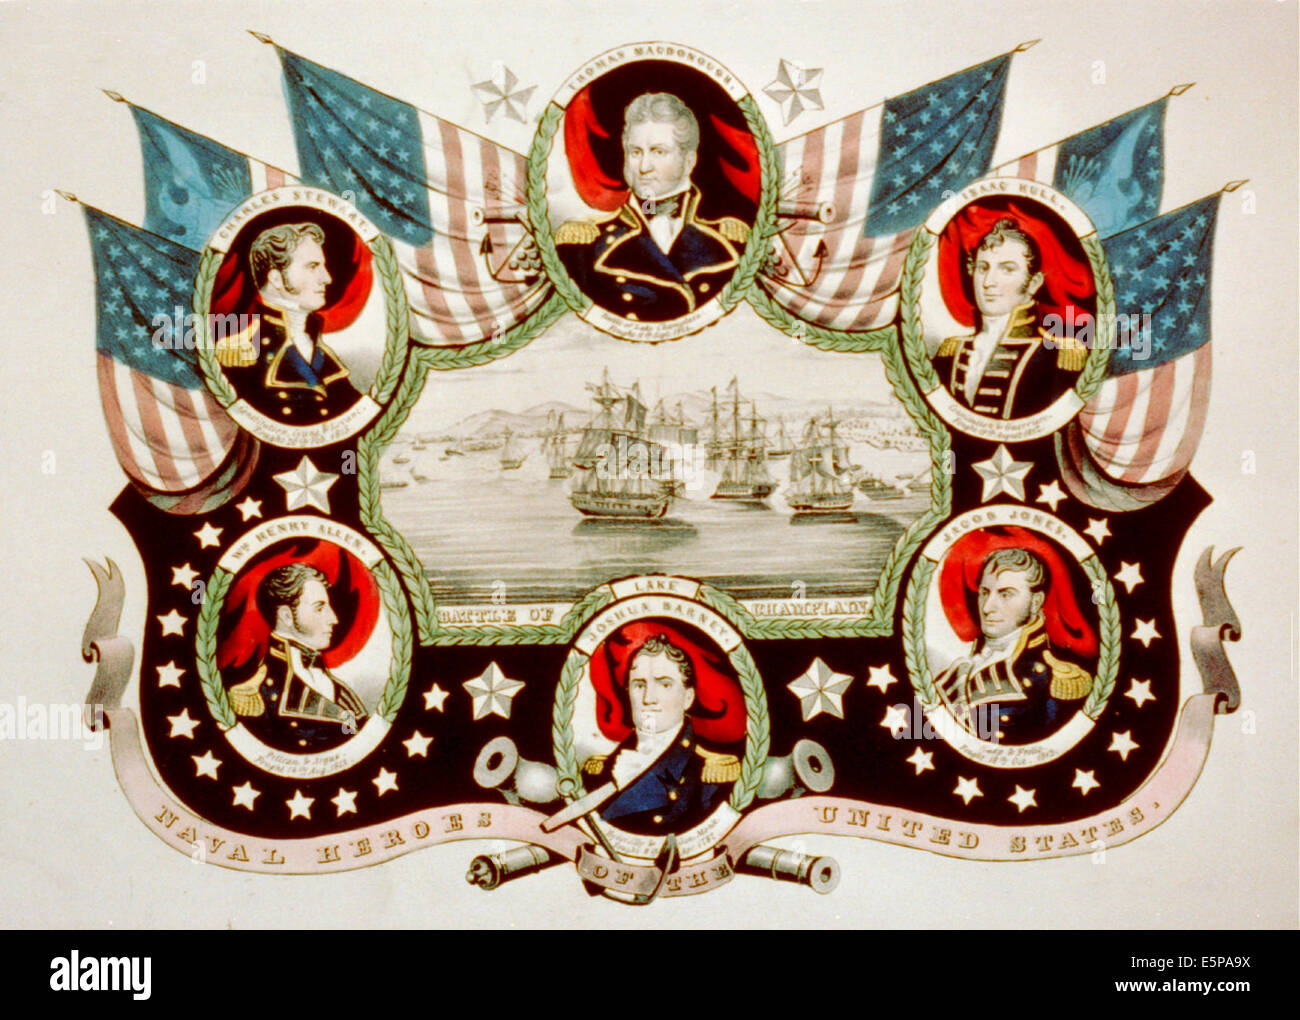 Héros de la marine des États-Unis - portraits de guerre de 1812 officiers de marine américain Thomas MacDonough, Isaac Hull, Jacob Jones, Joshua Barney, Charles Stewart, et William Henry Allen entourant une vignette de la bataille du lac Champlain. Banque D'Images